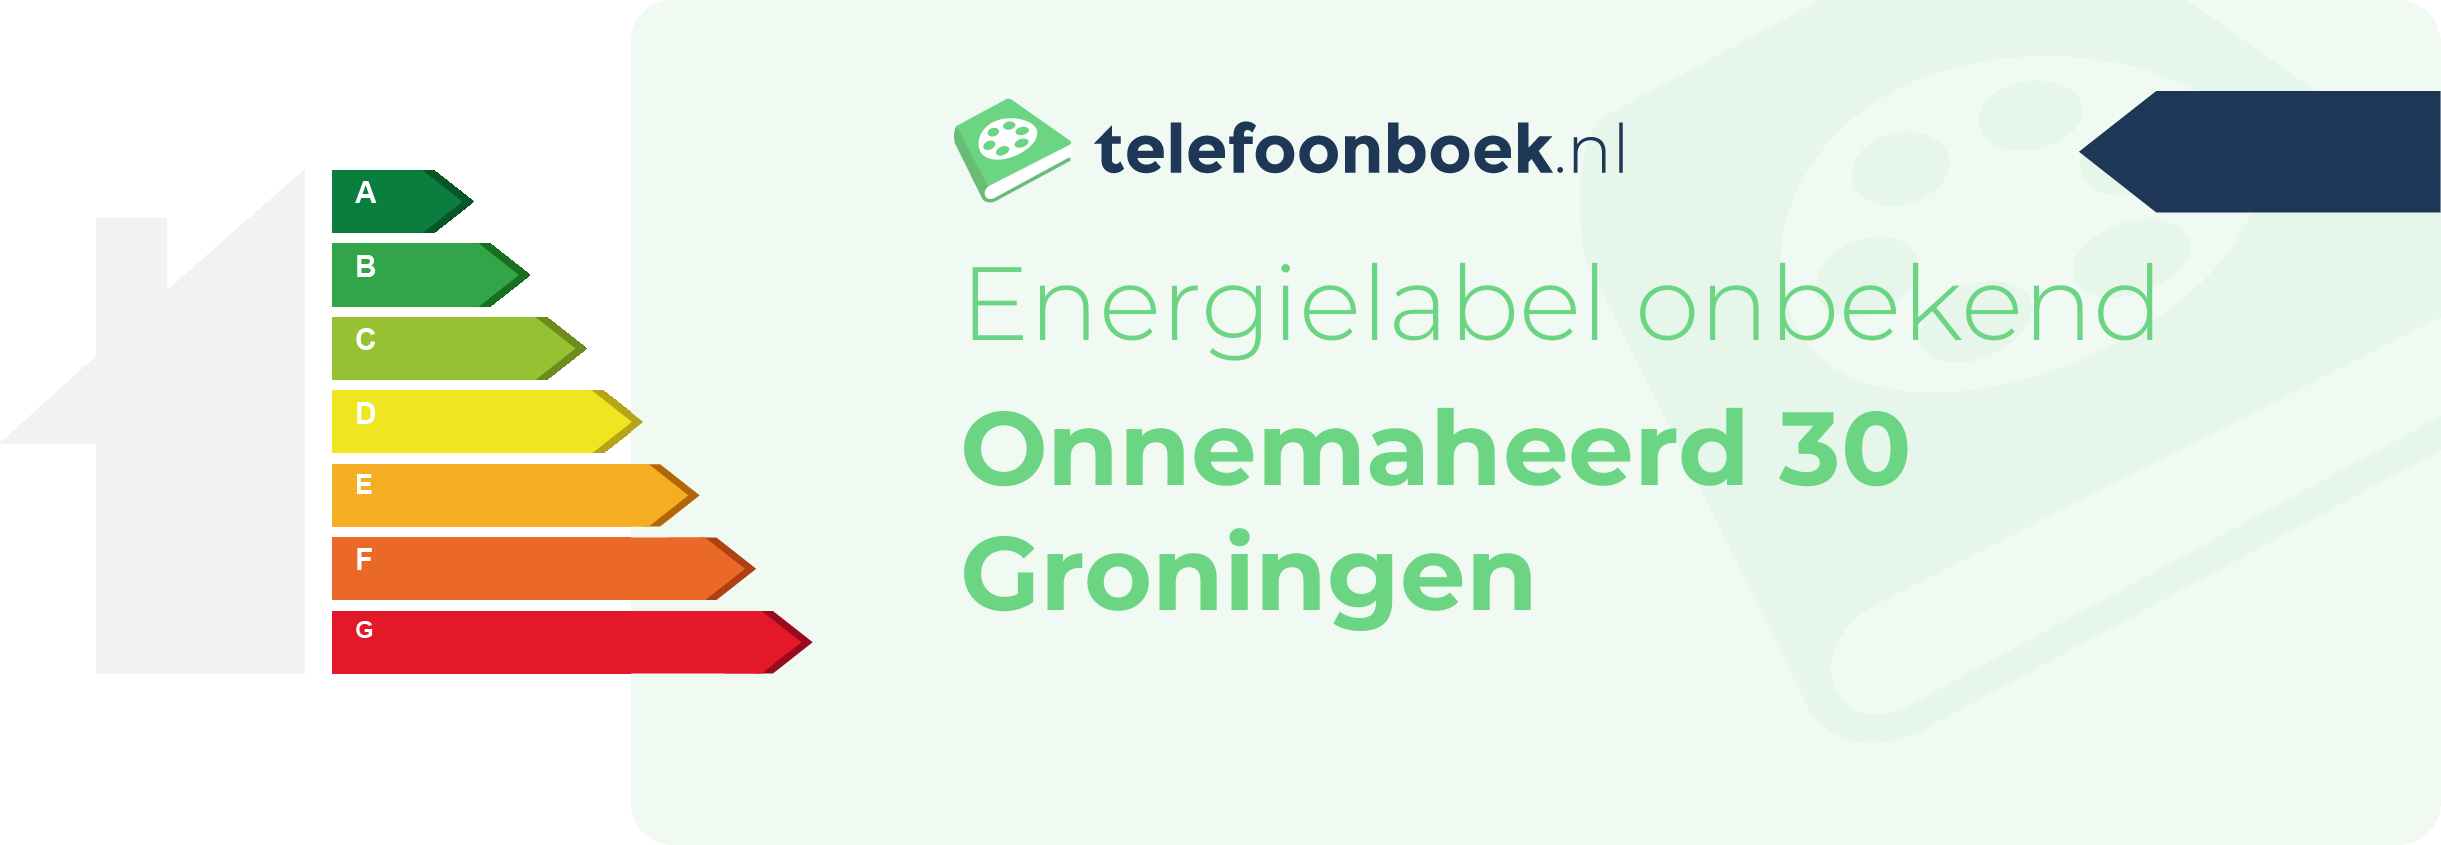 Energielabel Onnemaheerd 30 Groningen